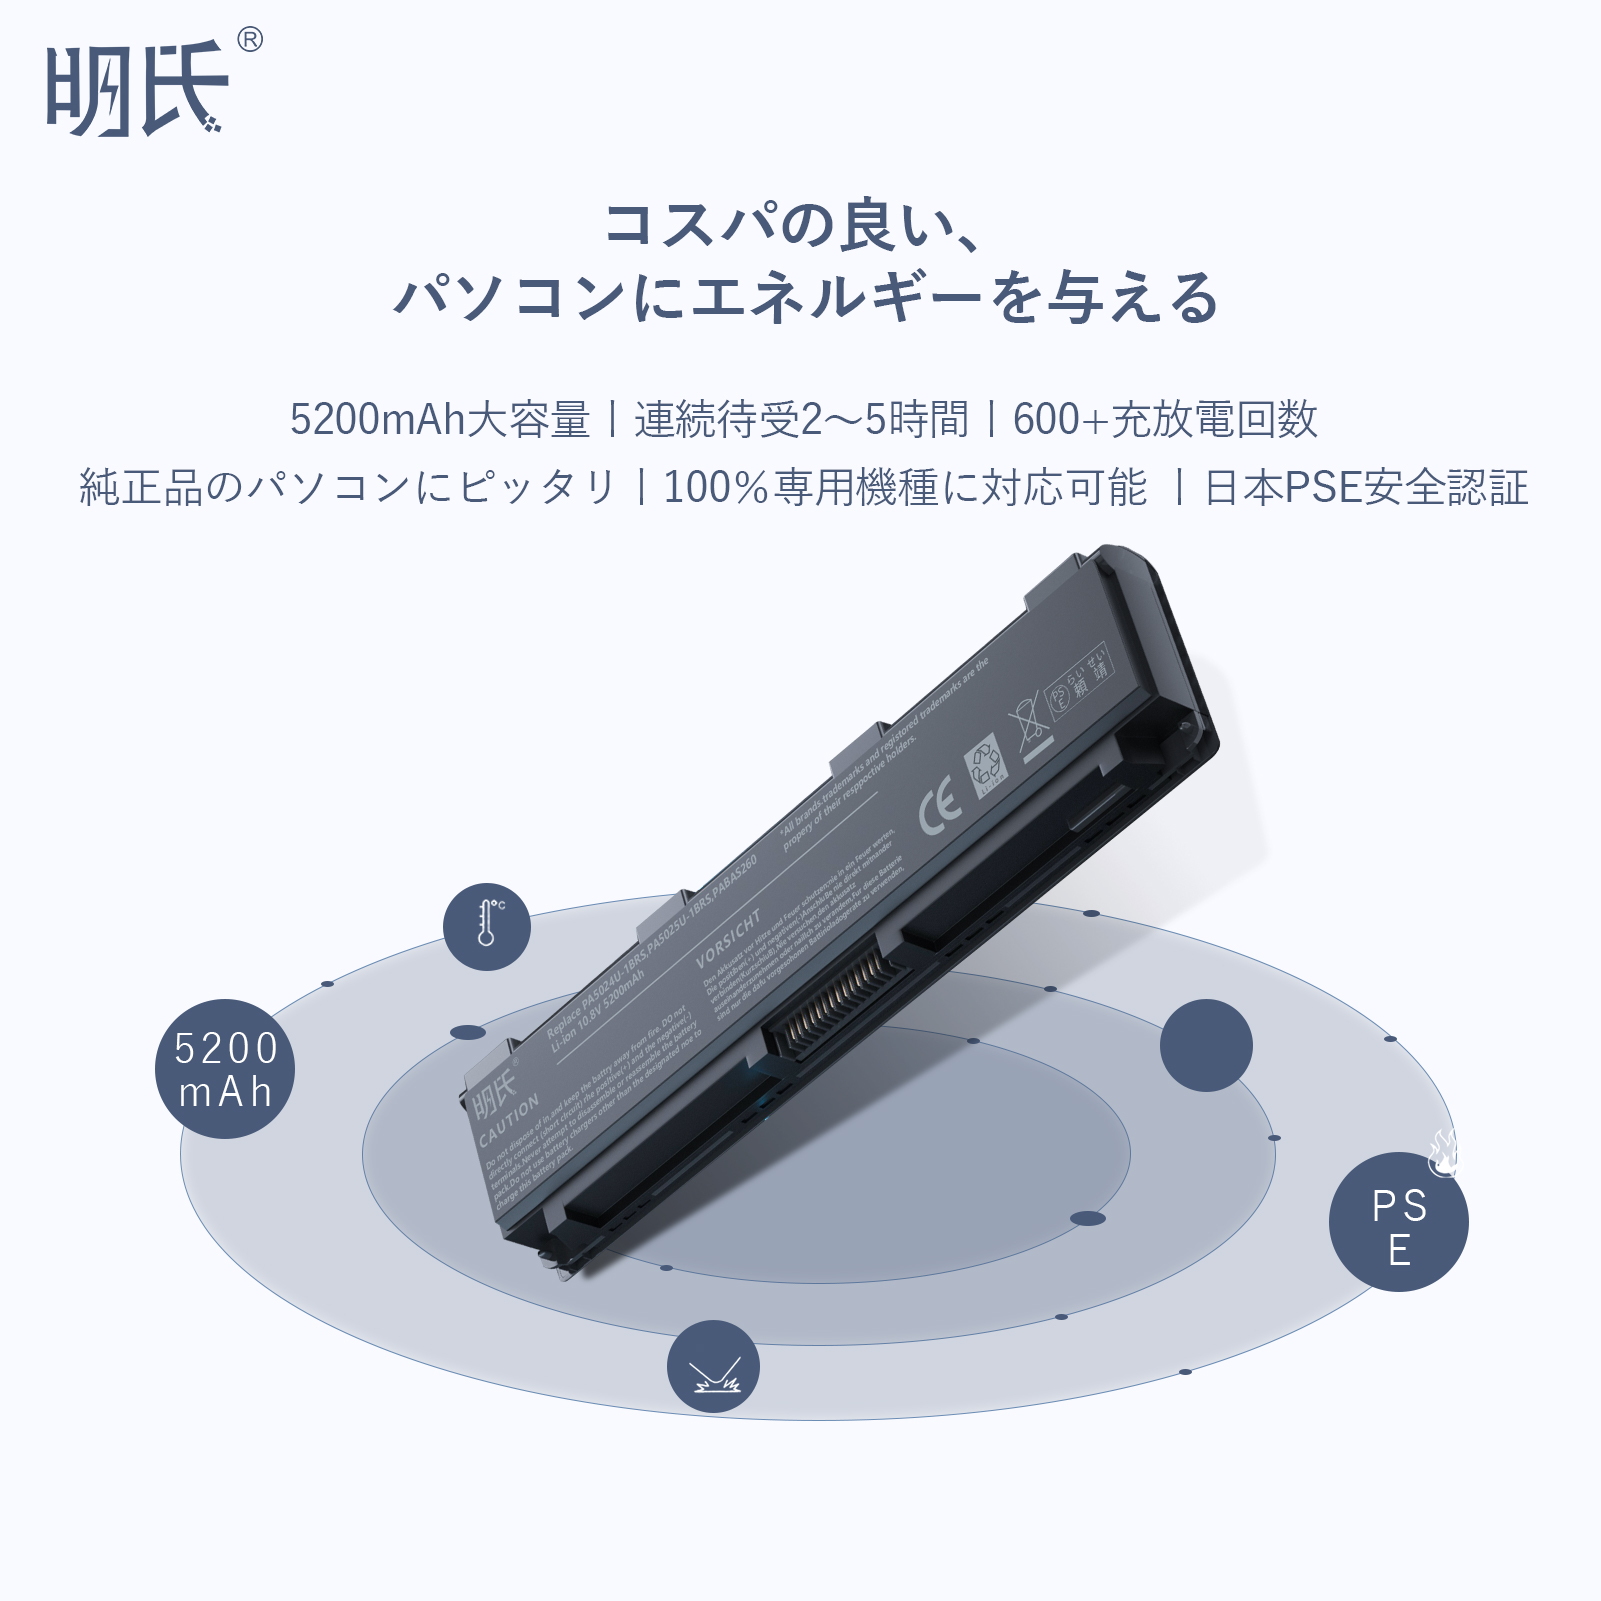 3ポートUSB-Cハブ SDカードリーダー付き 3x USB-A - USB-Cハブ | StarTech.com 日本